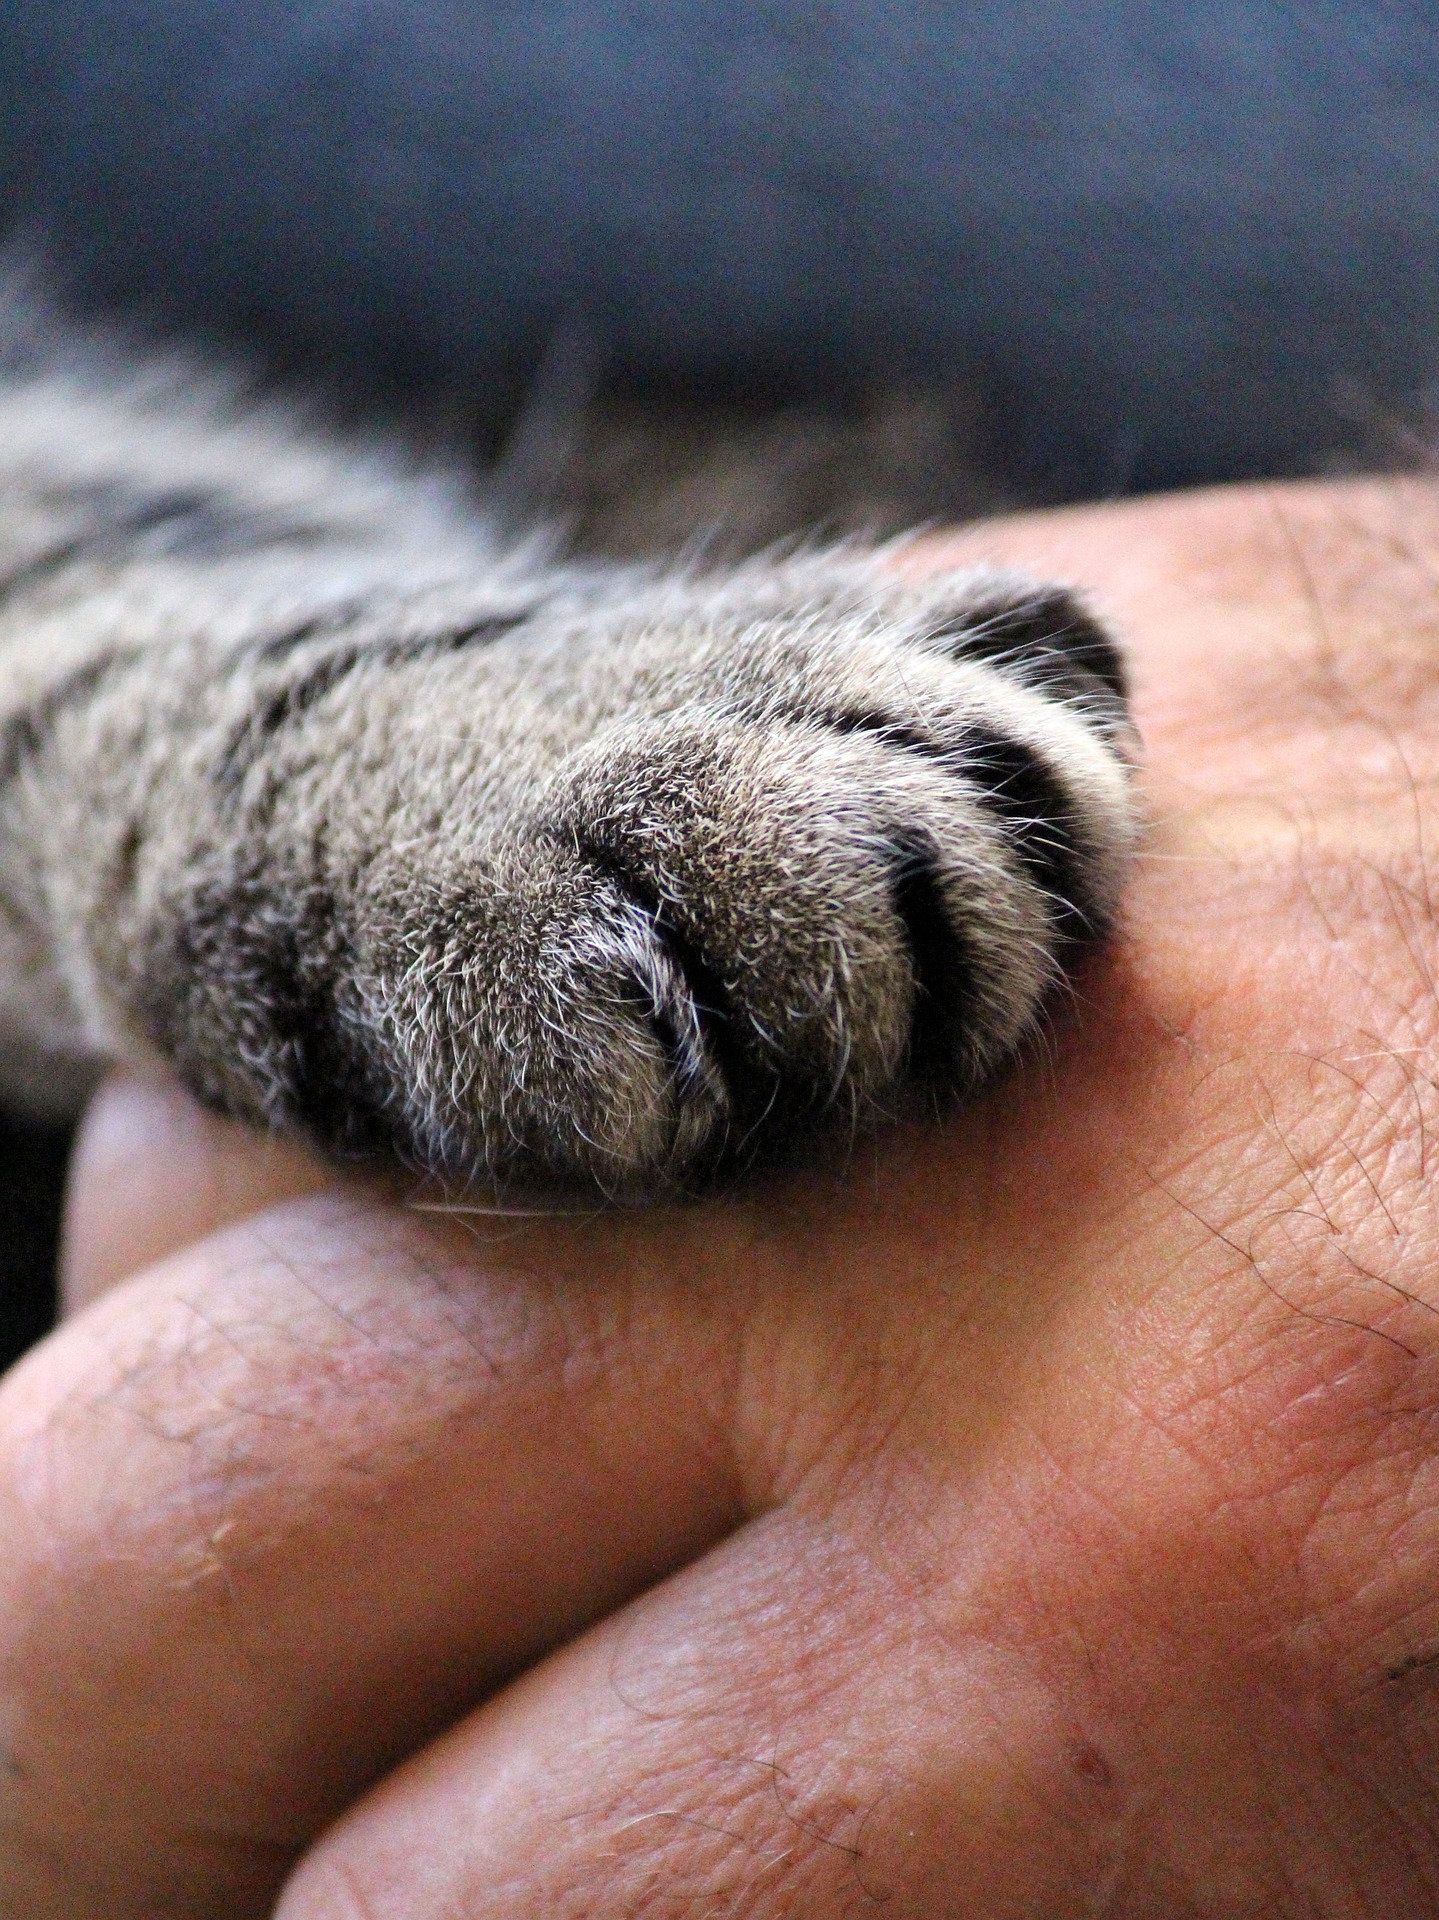 Katzenpfote auf der Hand eines Menschen